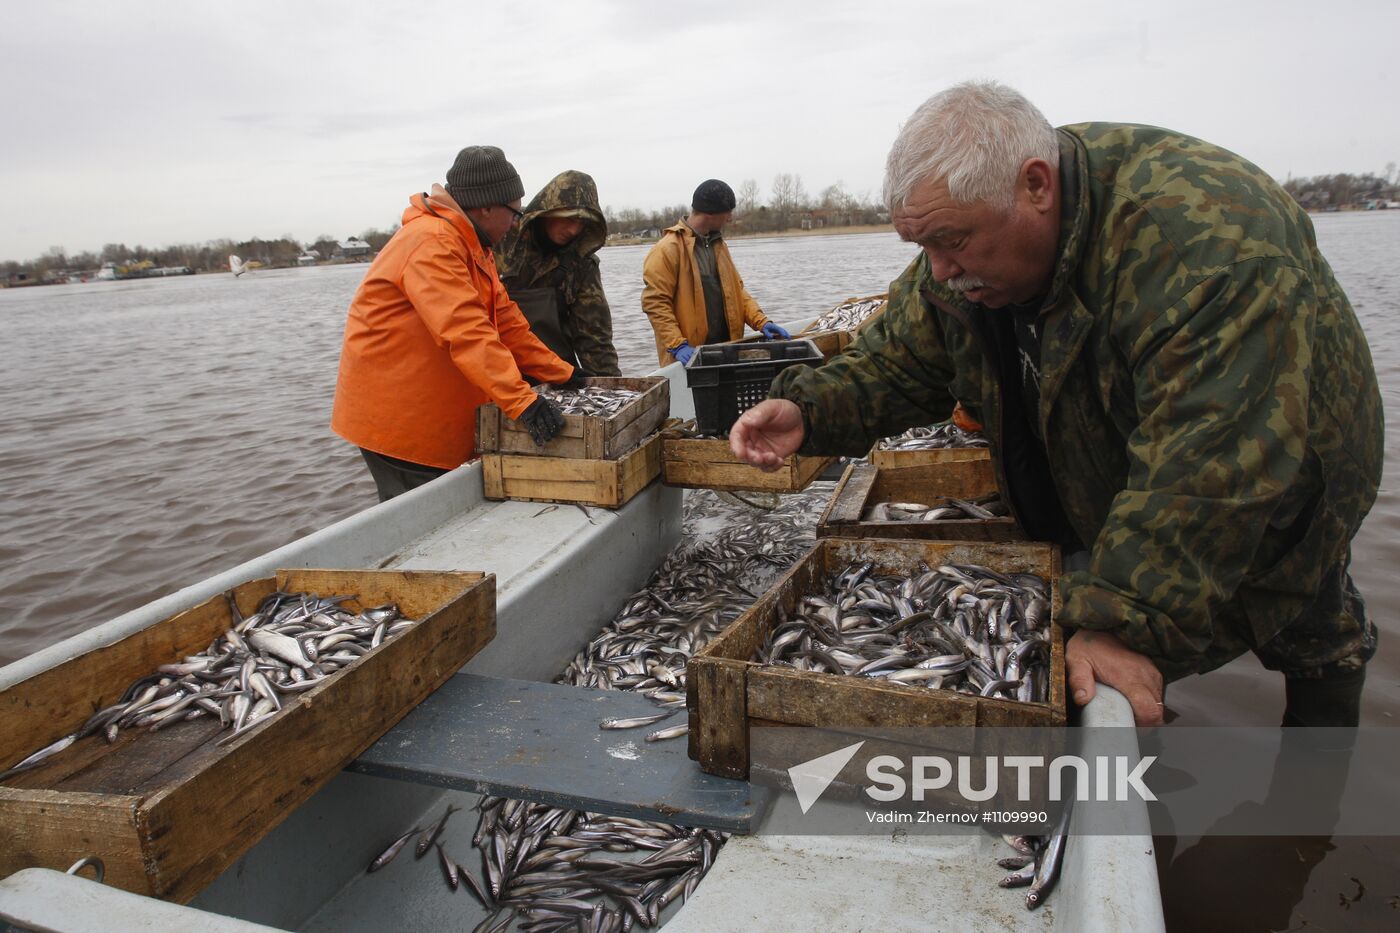 Smelt fishing on Lake Ladoga